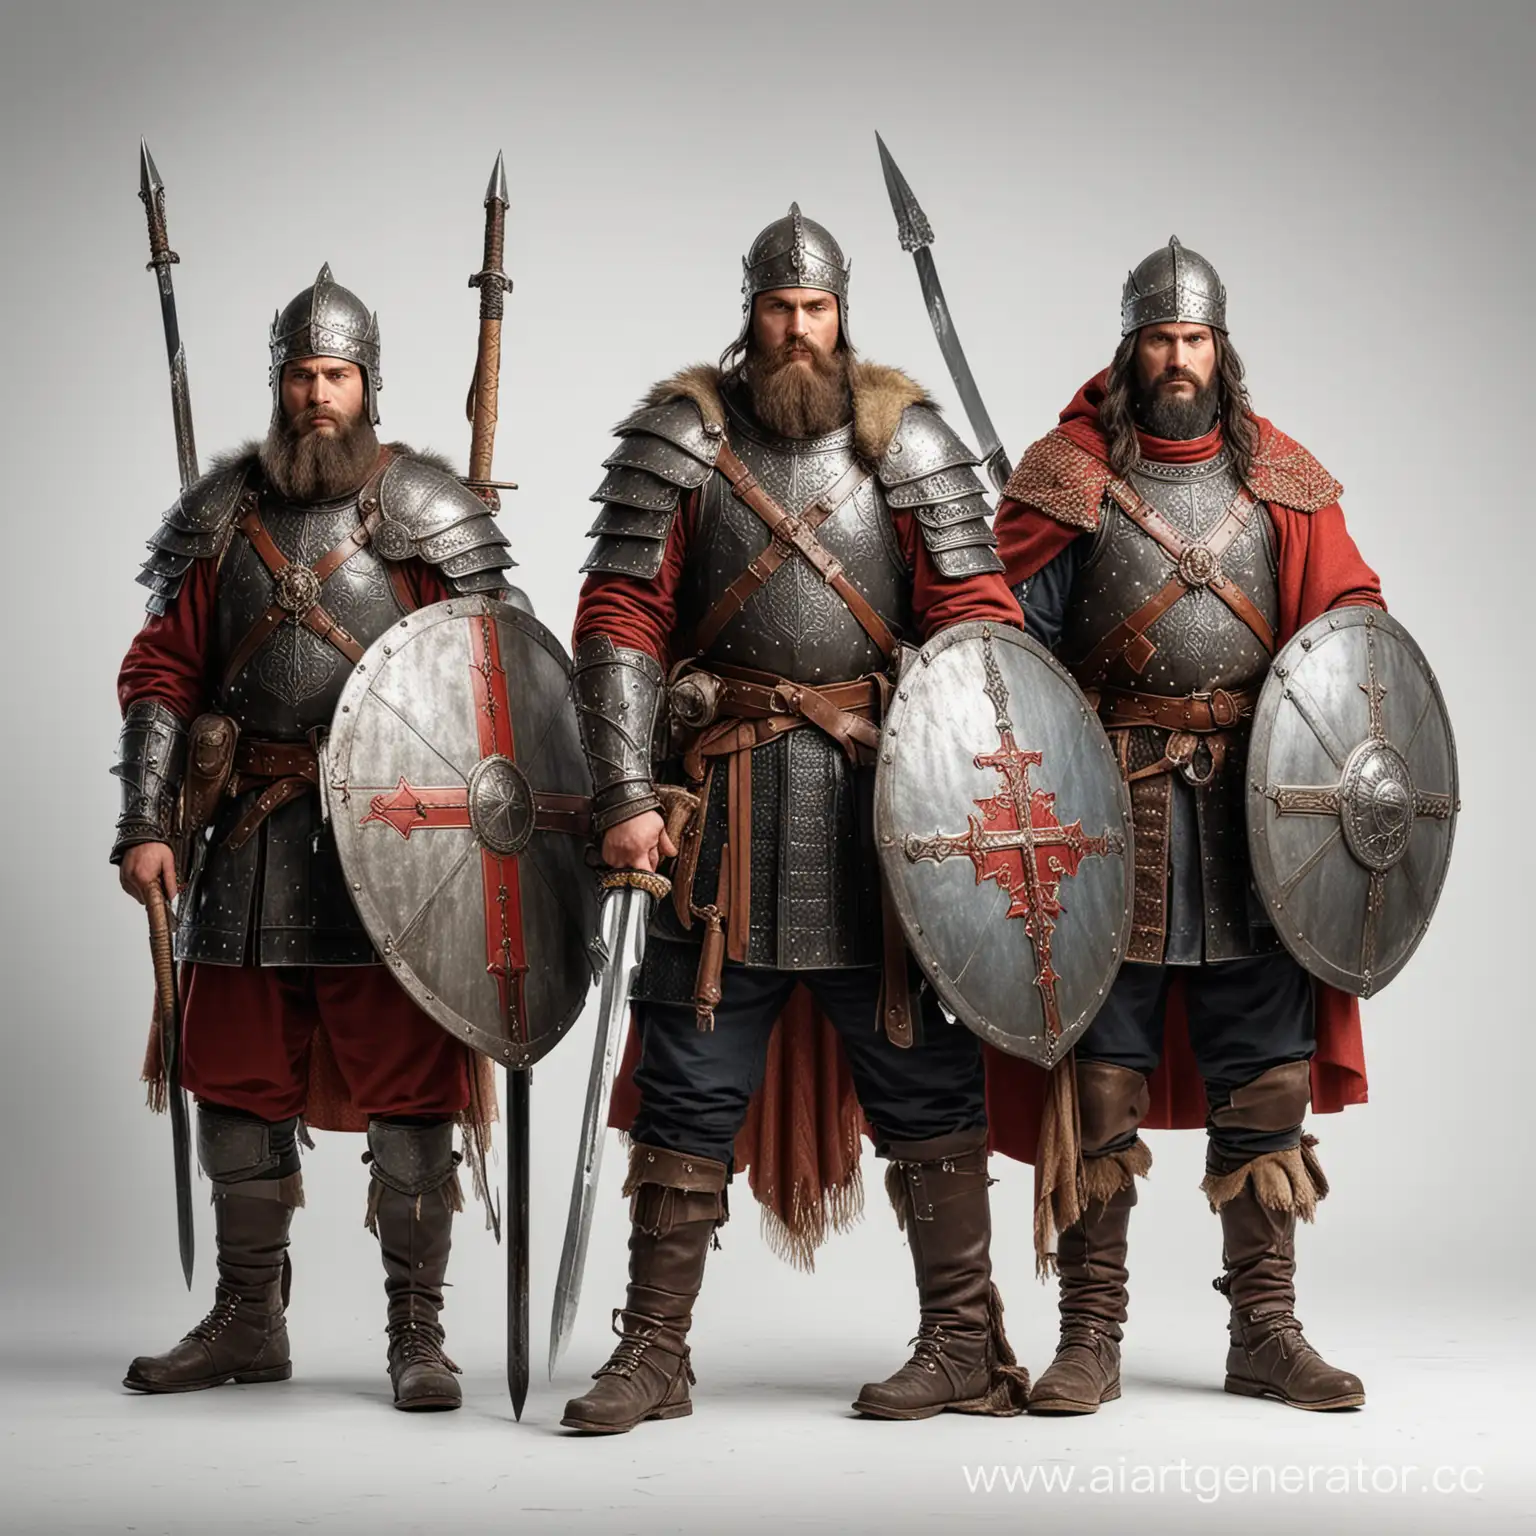 три богатыря славянские воины, русские витязи, на белом фоне, в полный рост, реализм, со щитом впереди, в руках меч, копье,  булава, в красных плащах